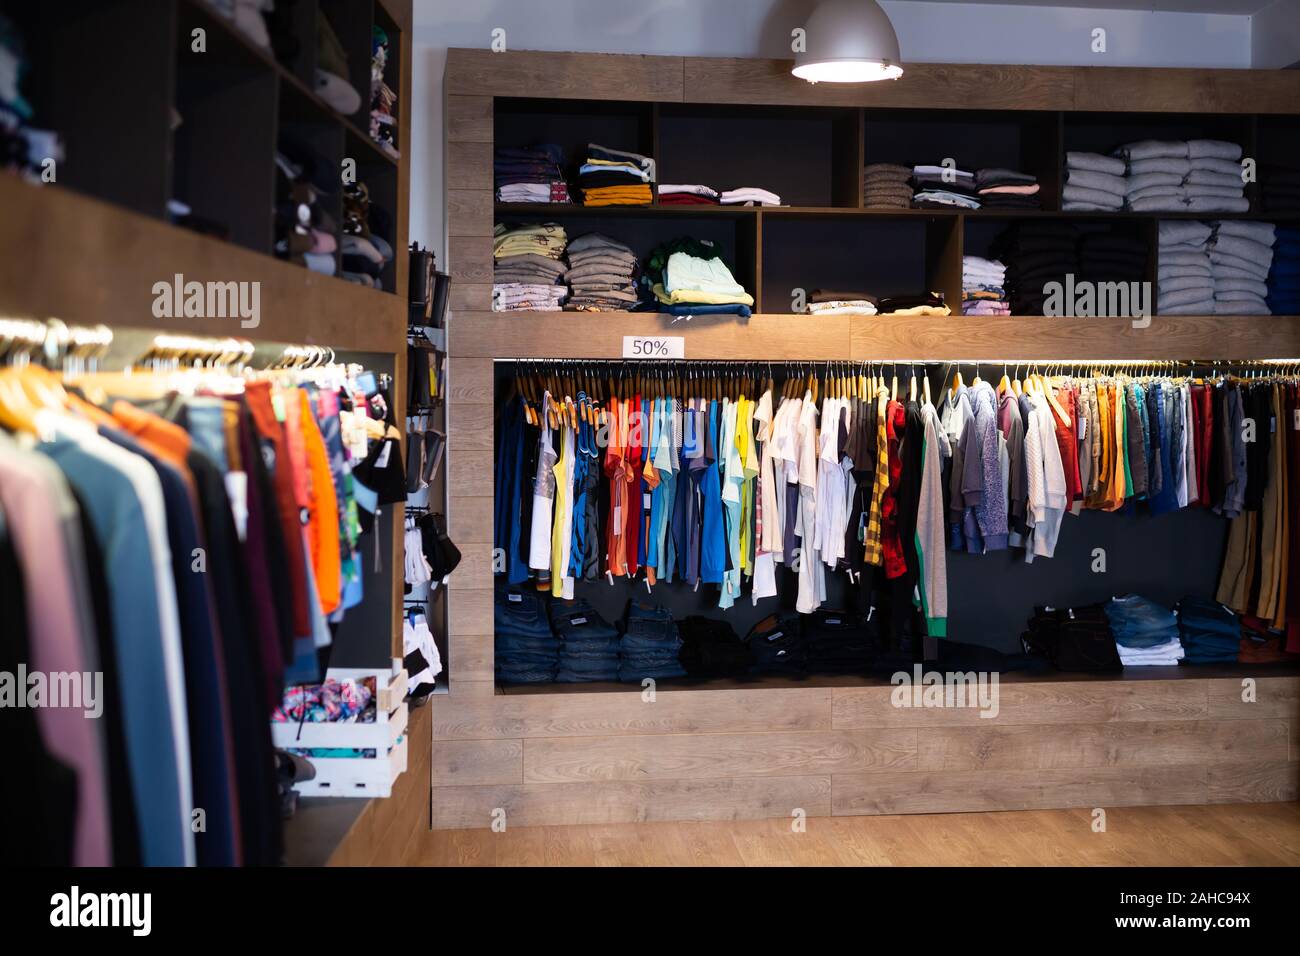 Männer Kleidung Shop, legere Kleidung auf Kleiderbügeln und Regale in Bekleidung Shop Stockfoto